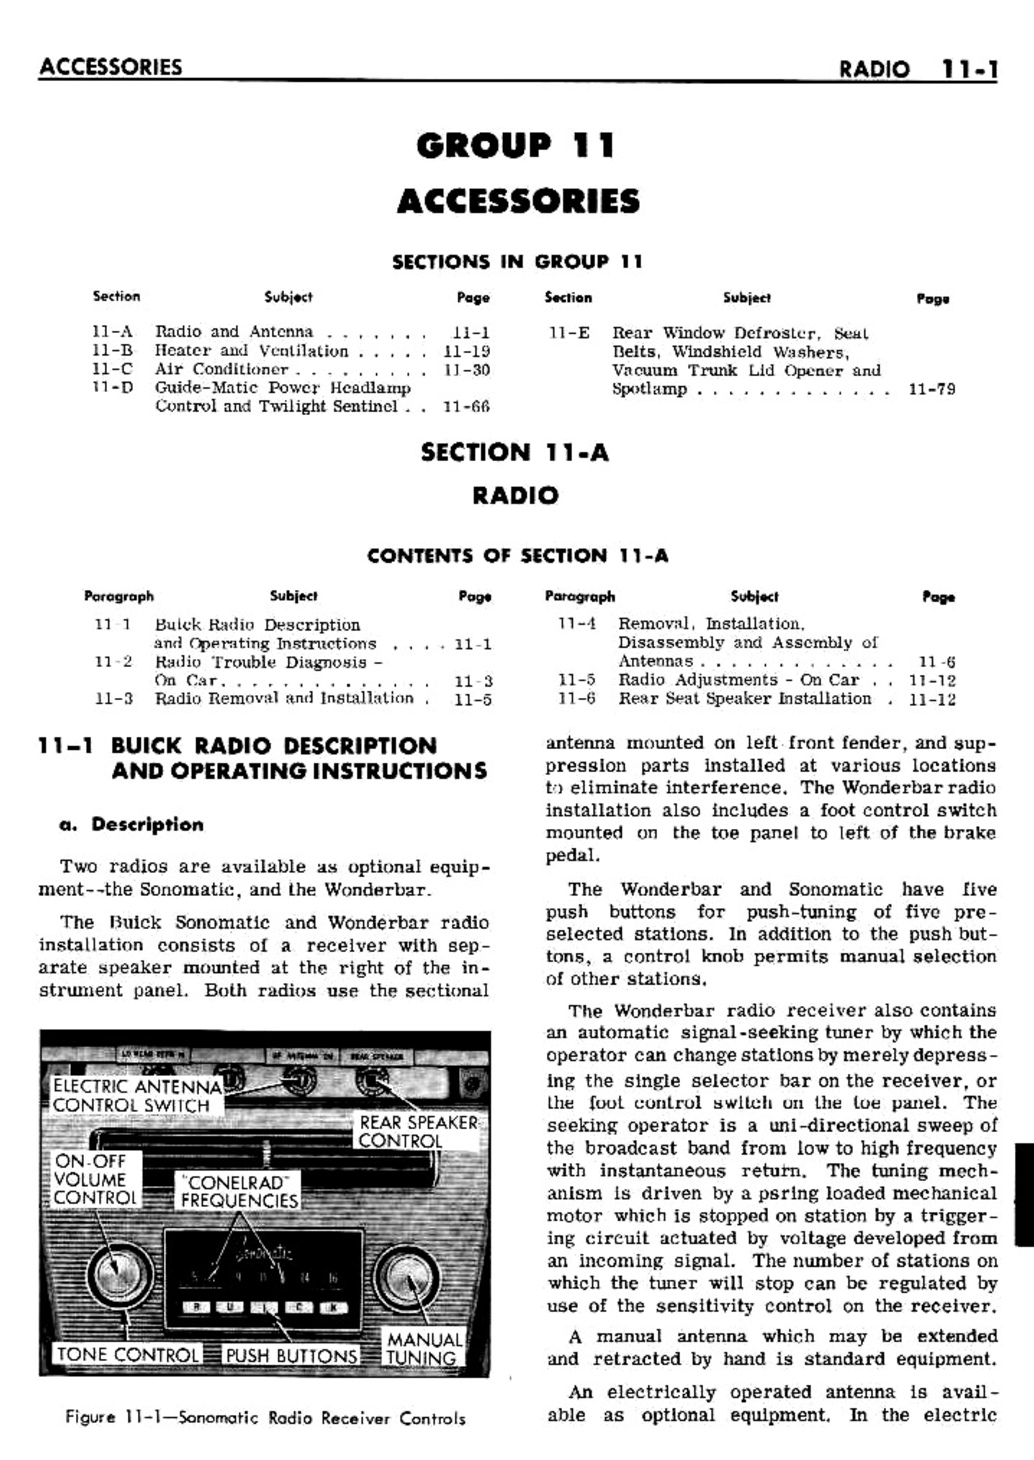 n_11 1961 Buick Shop Manual - Accessories-001-001.jpg